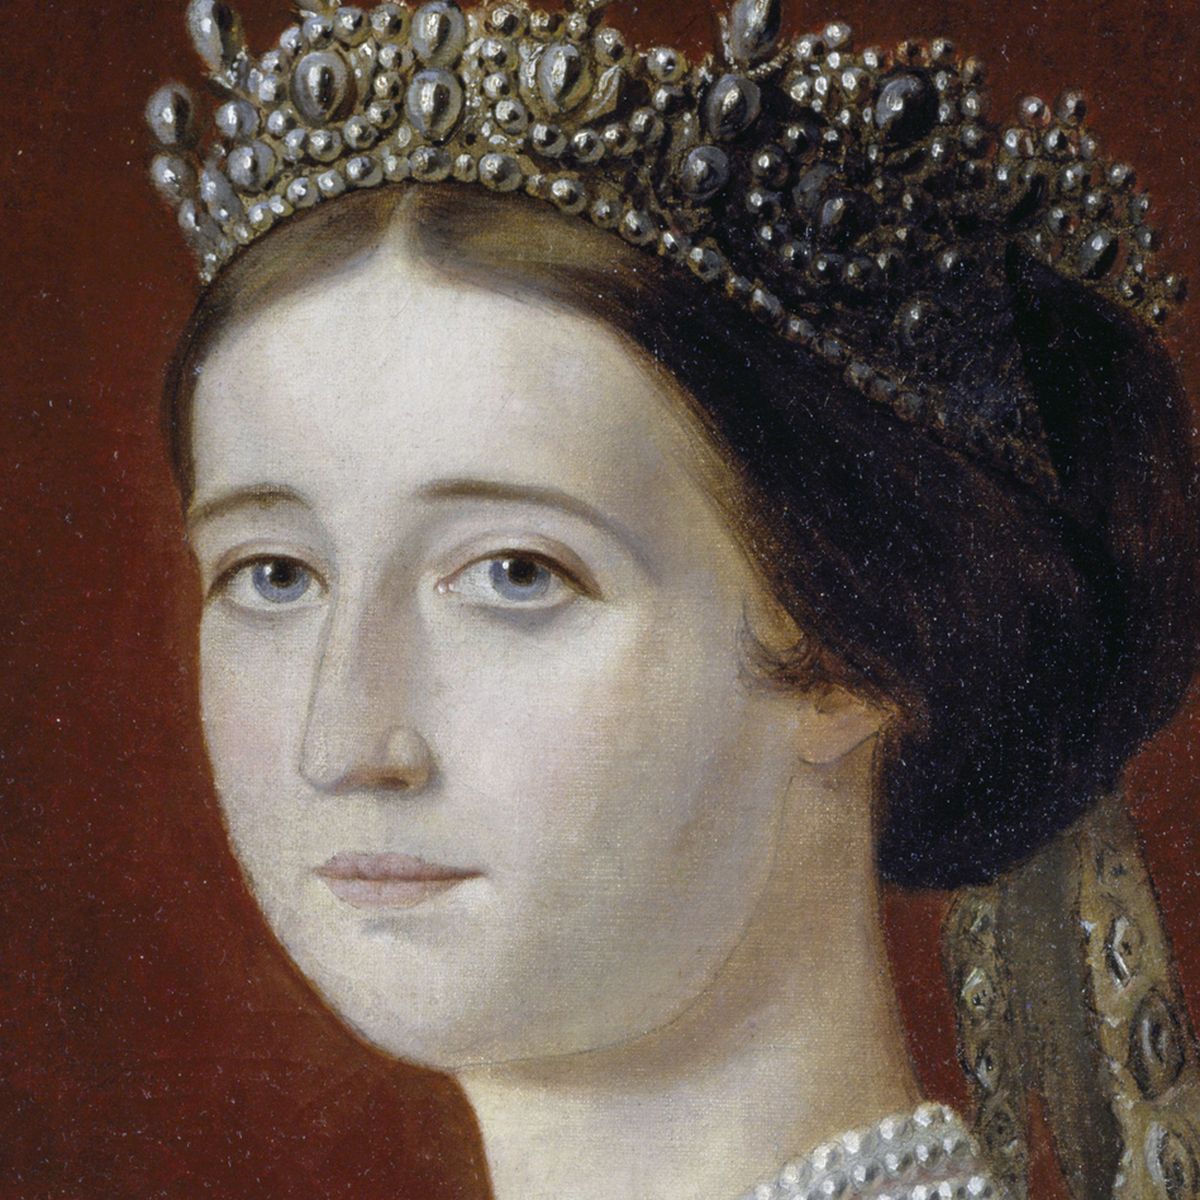 Eugénie de Montijo, Empress consort of the French